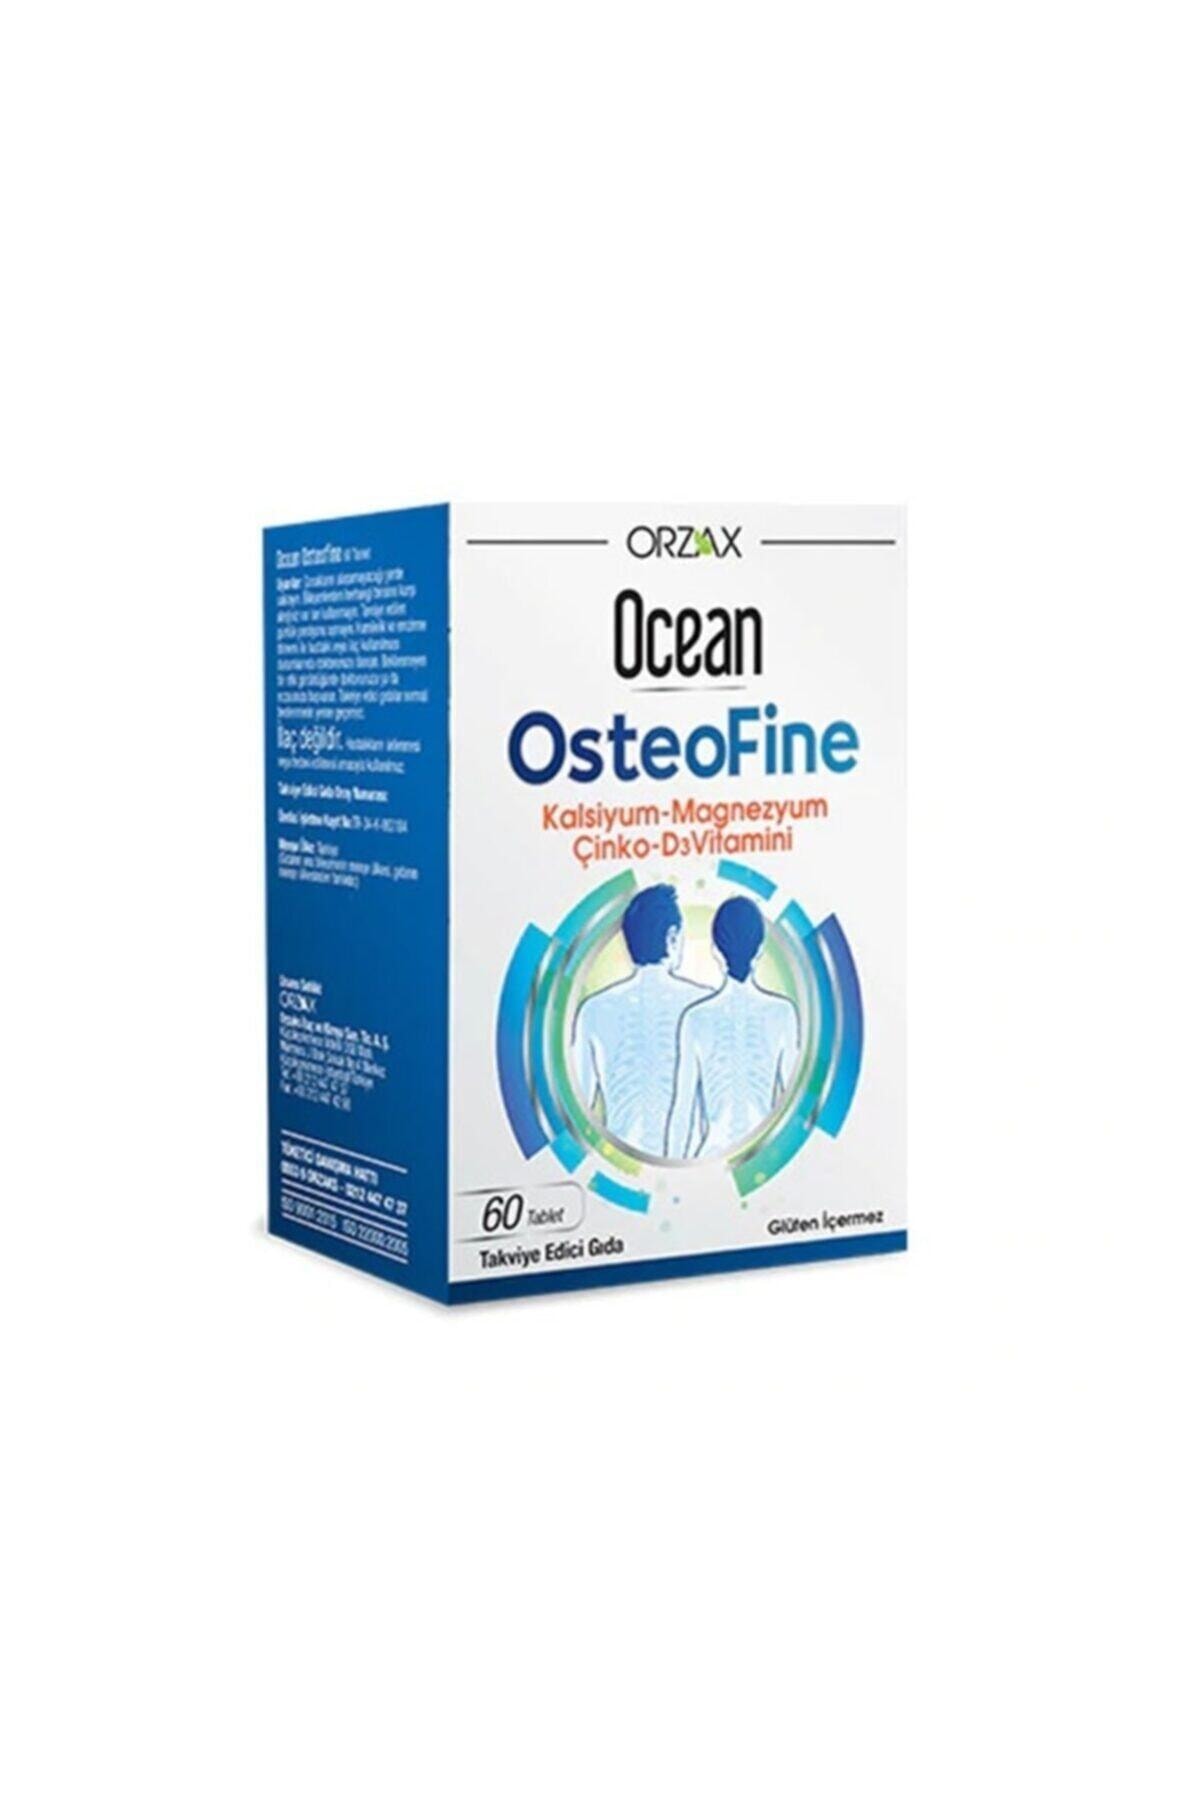 Orzax Ocean Osteofine 60 Tablet